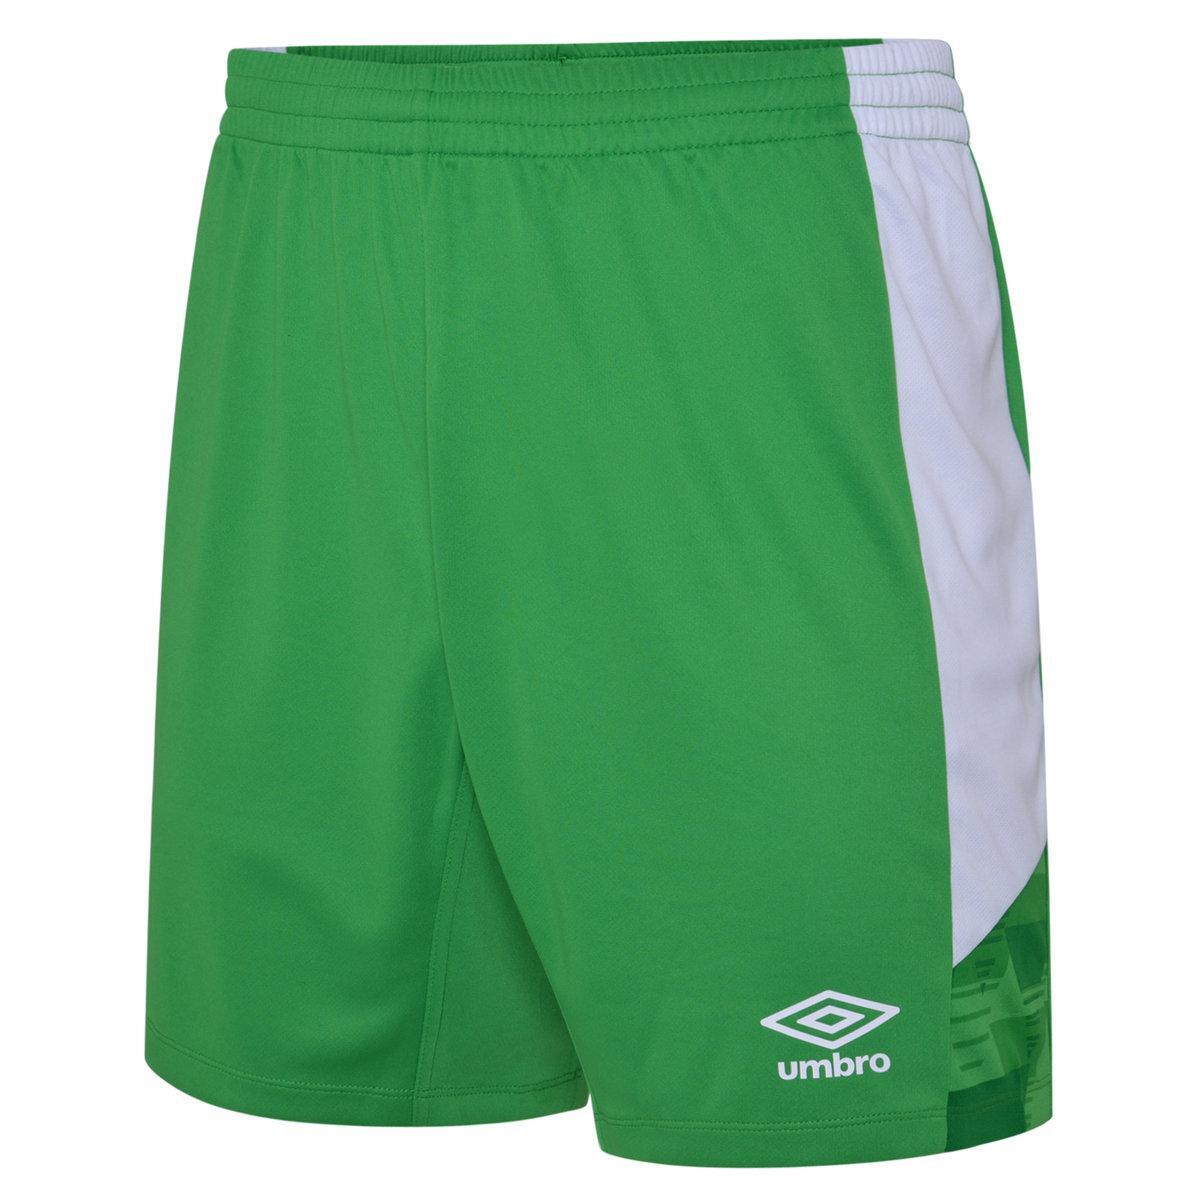 UMBRO Childrens/Kids Vier Shorts (Emerald/White)